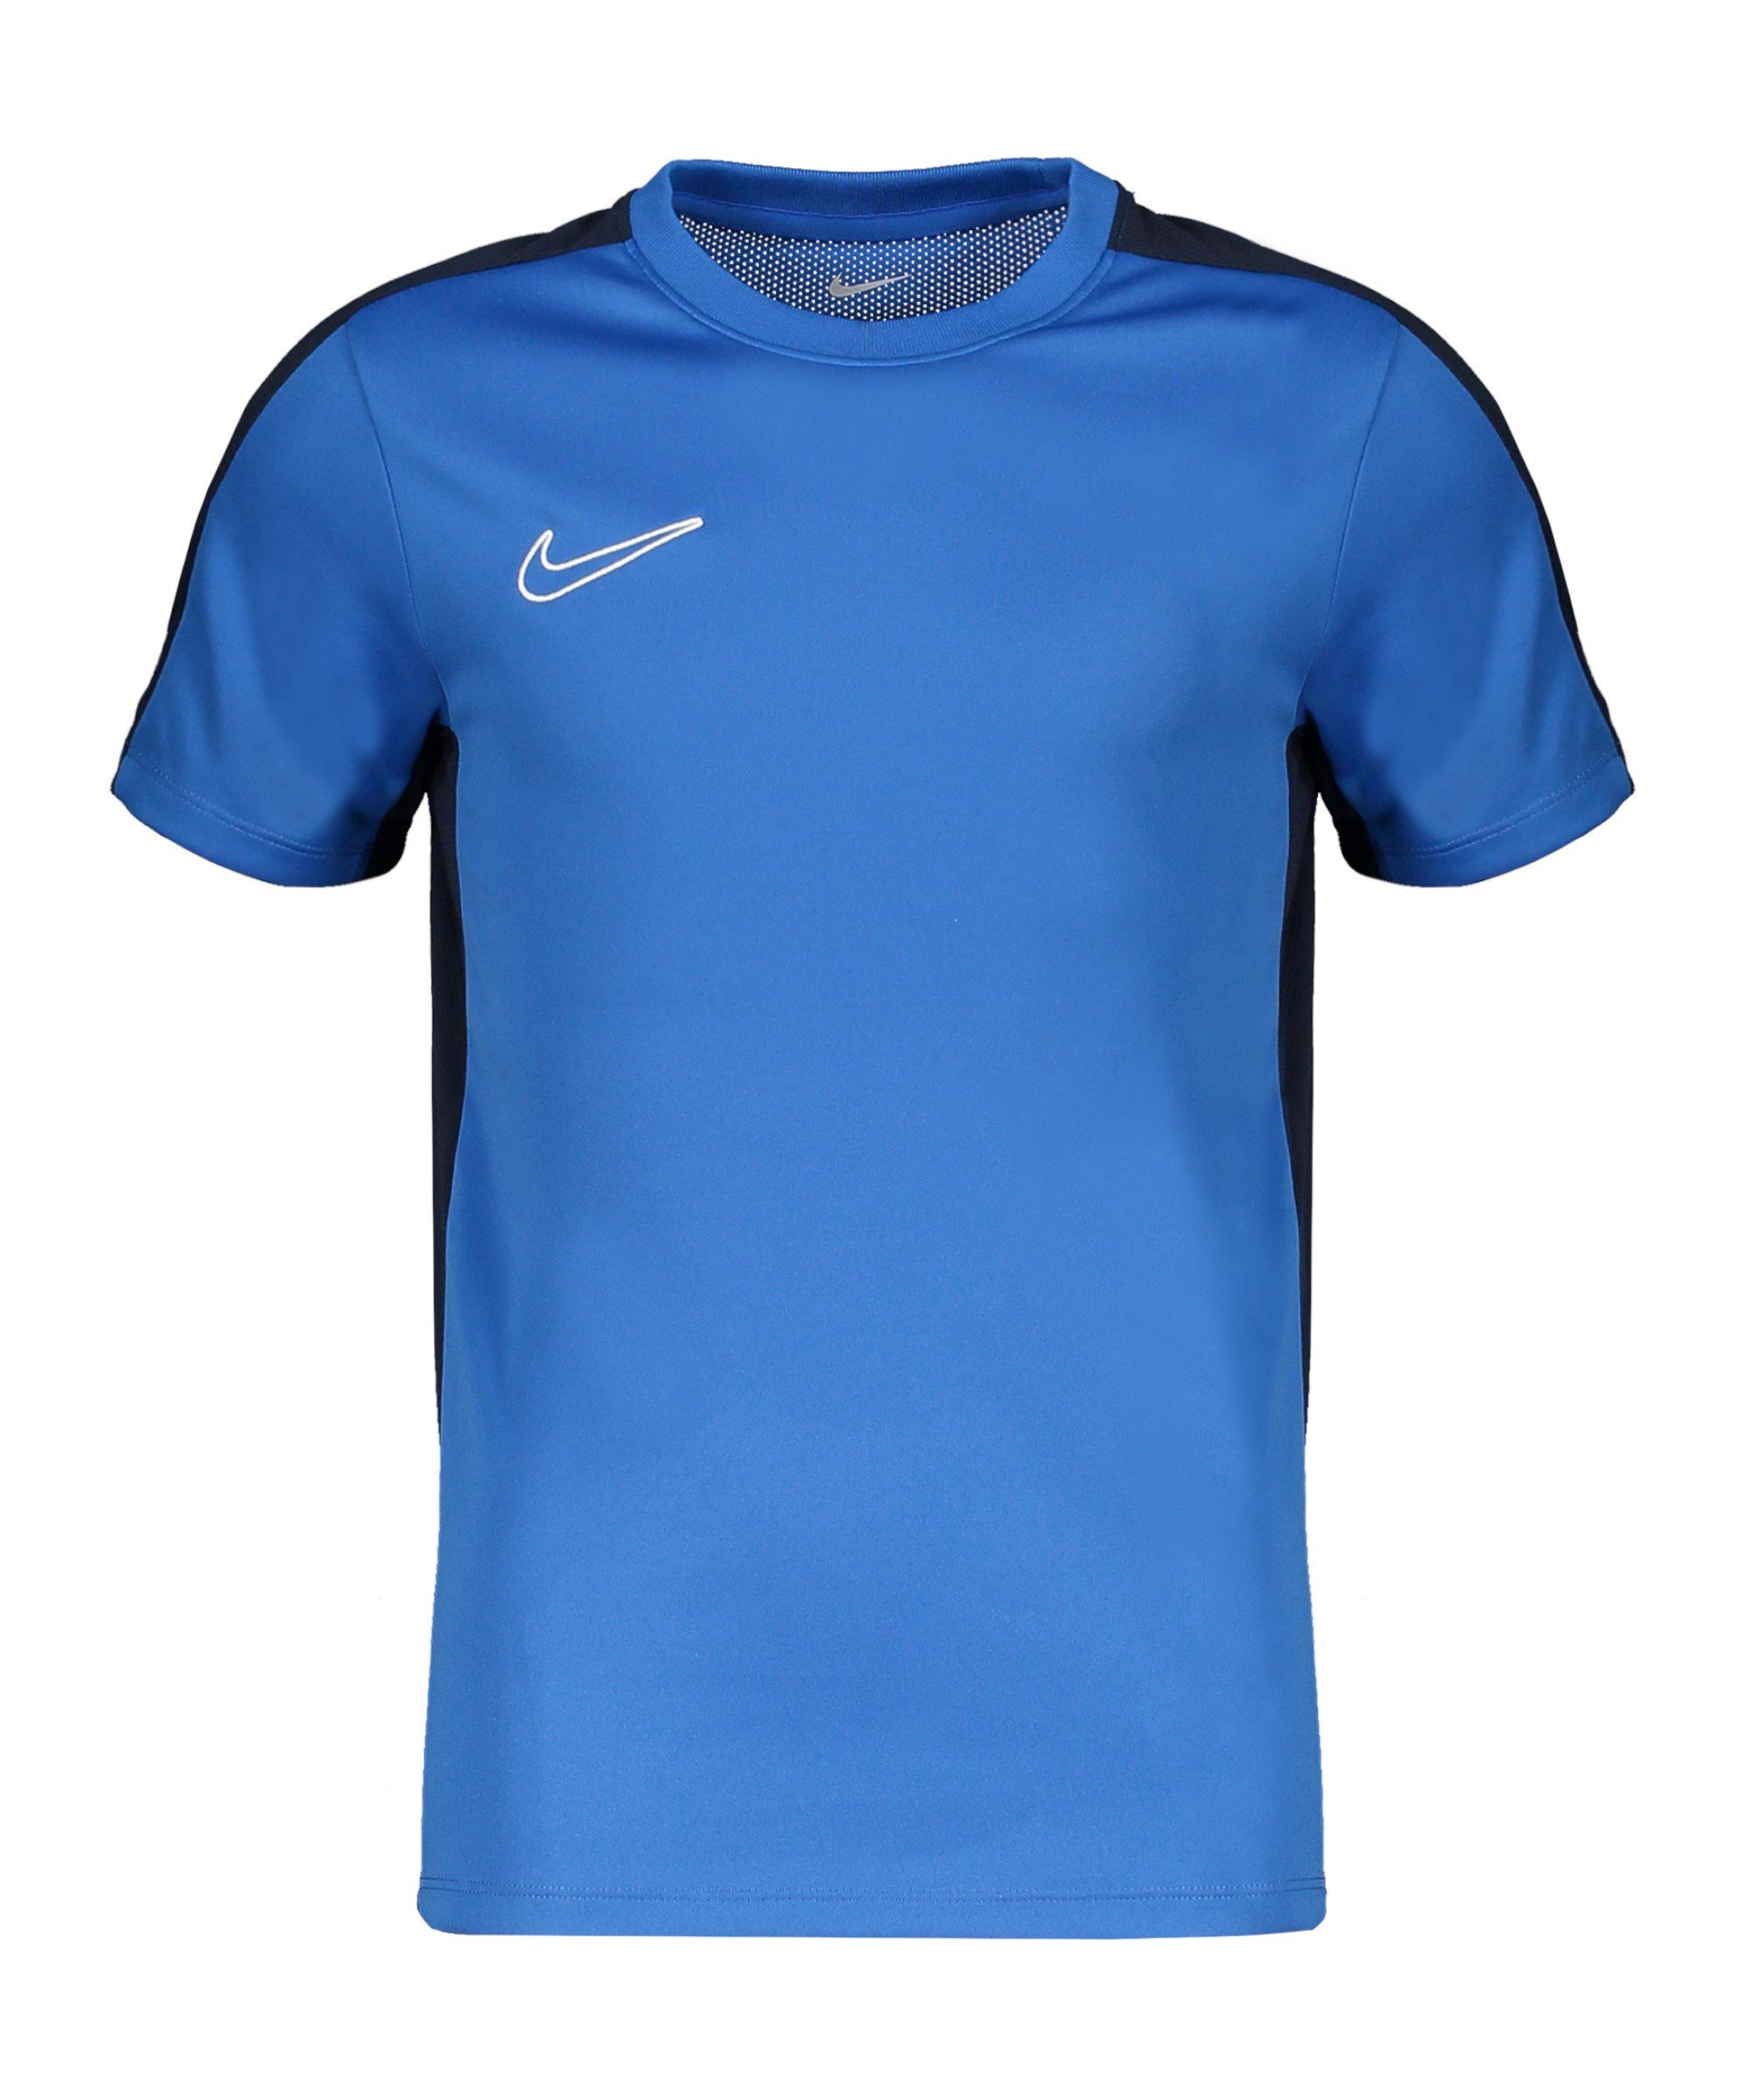 dunkelblaublauweiss Trainingsshirt default T-Shirt 23 Nike Kids Academy